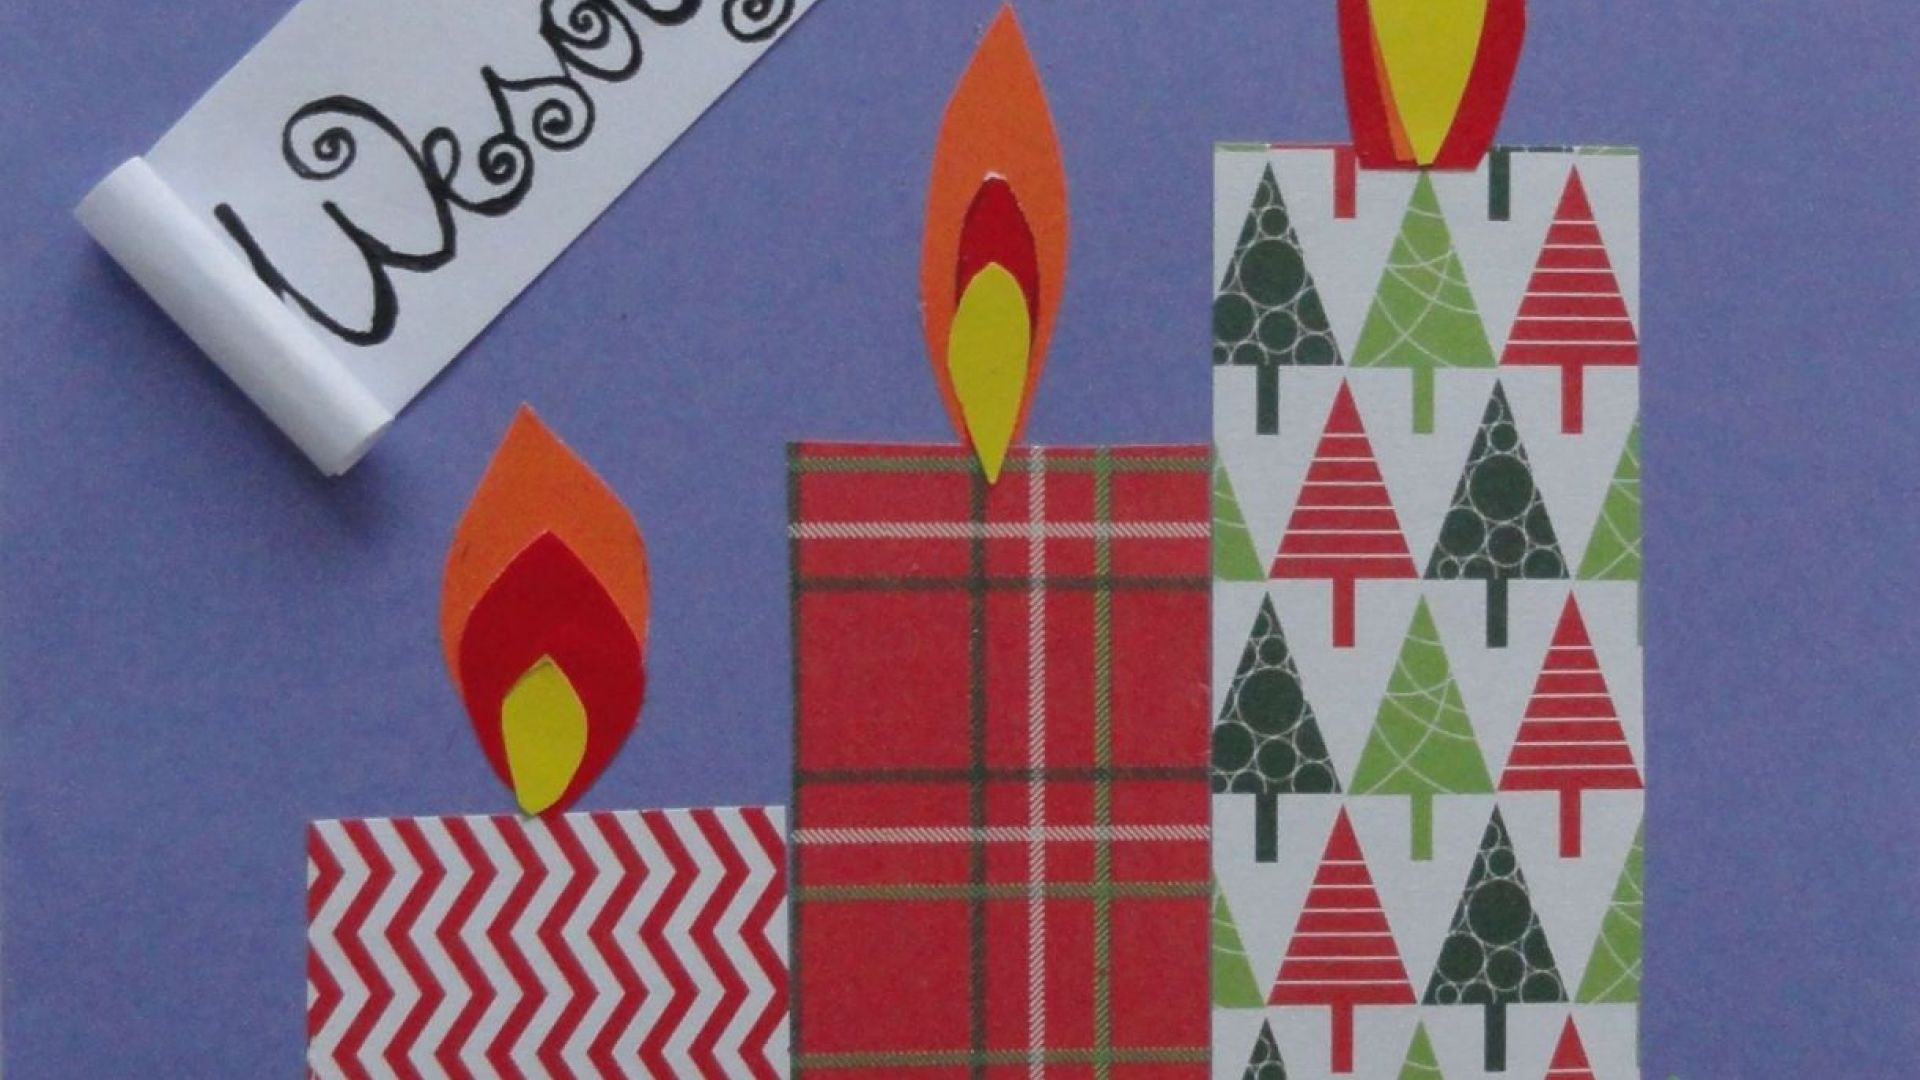 Kartka Bożonarodzeniowa z kolorowymi świecami. Autor - Justyna K.